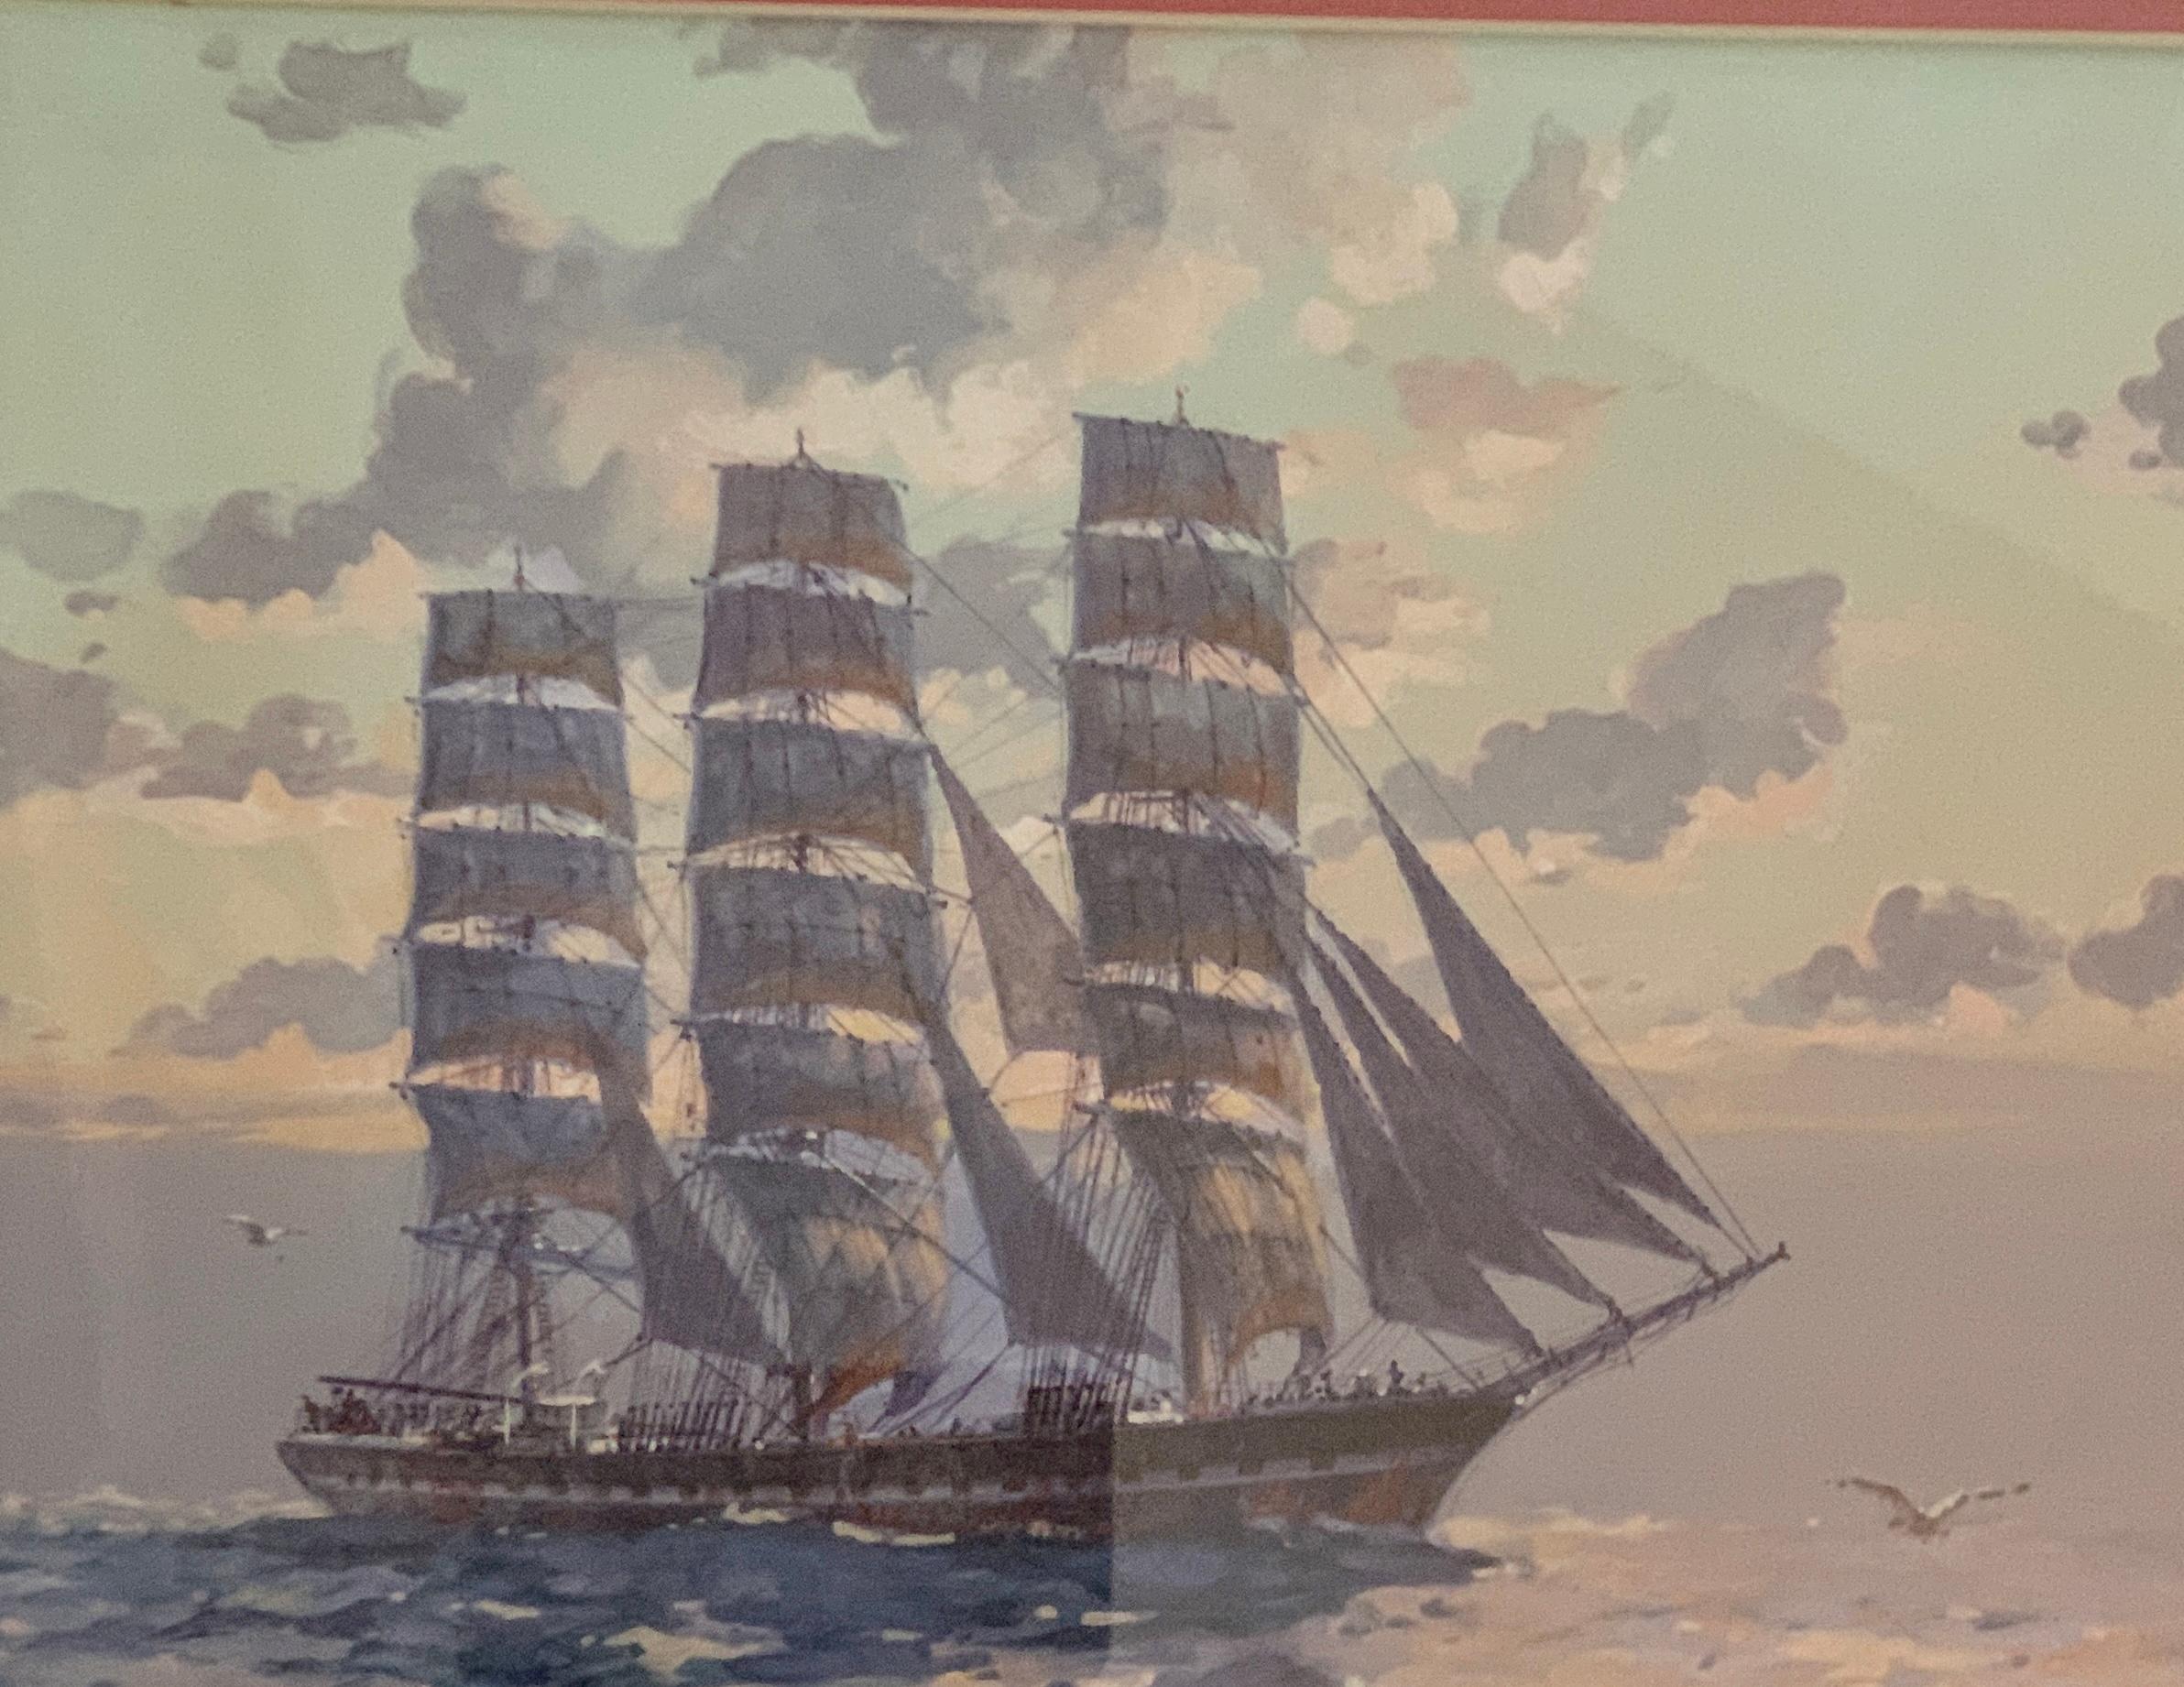 Vieux navire à clipper anglais en voile pleine en mer avec le soleil couchant - Réalisme Art par John Allan